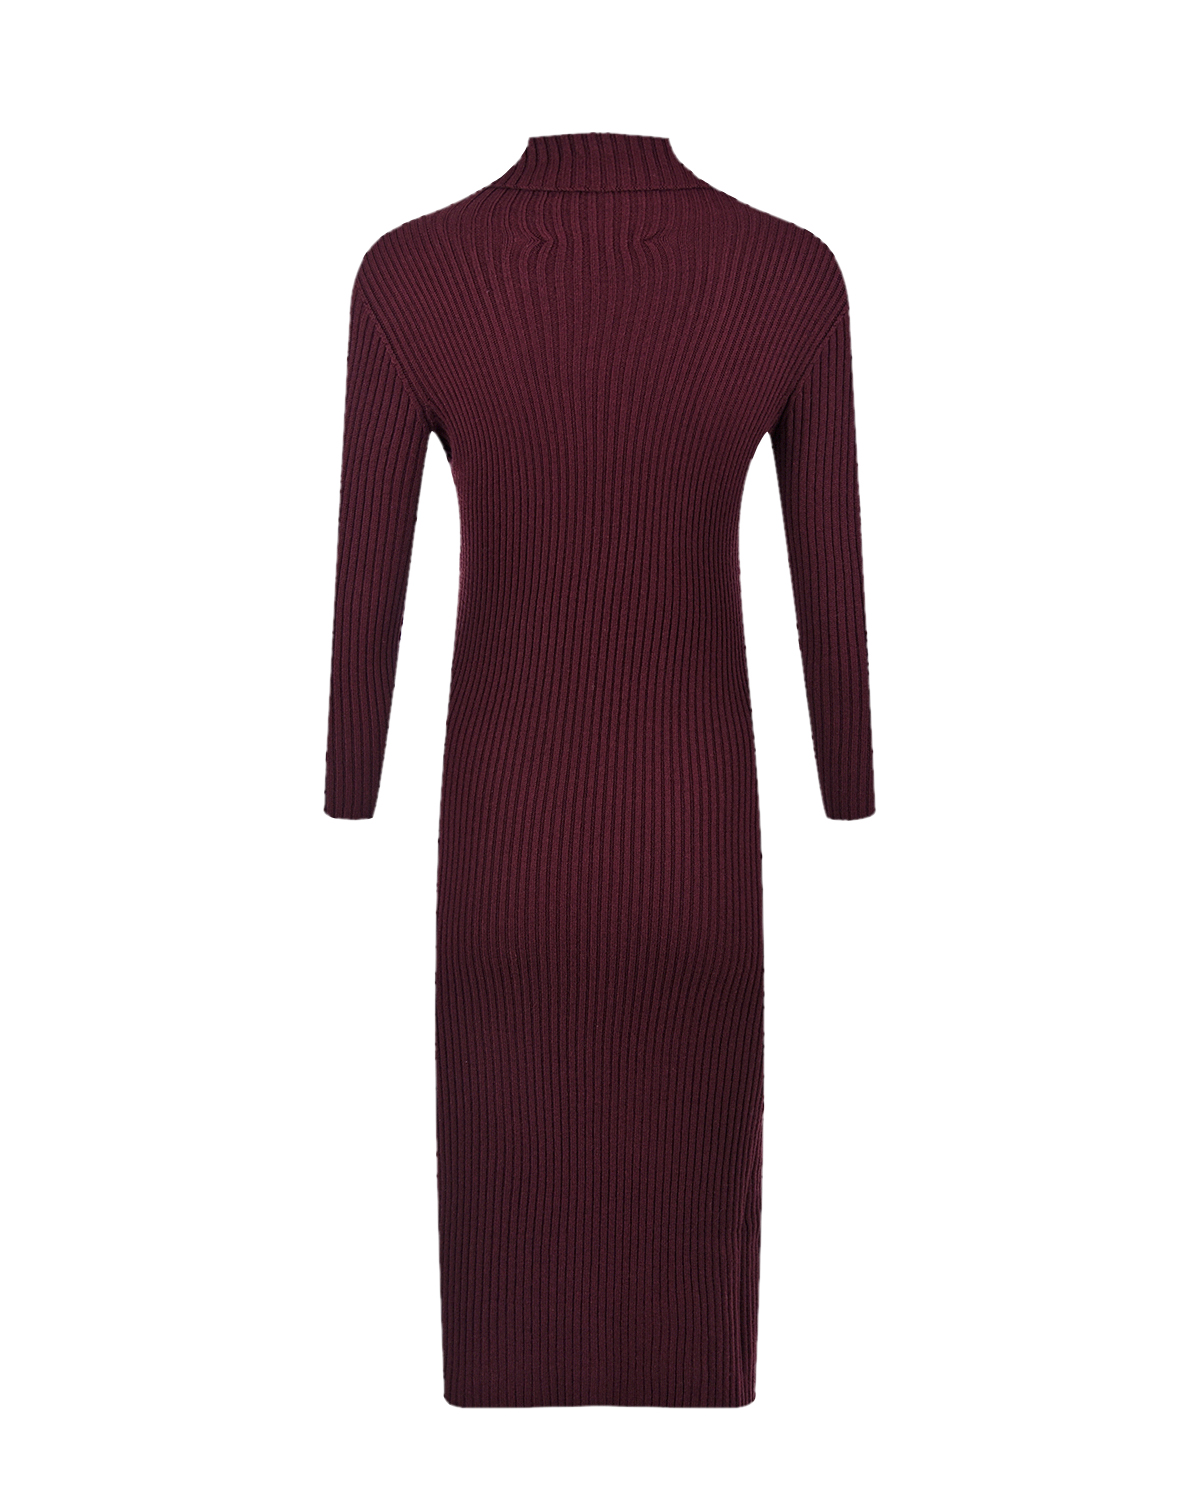 Бордовое платье Livigno Pietro Brunelli, размер 42, цвет бордовый - фото 6